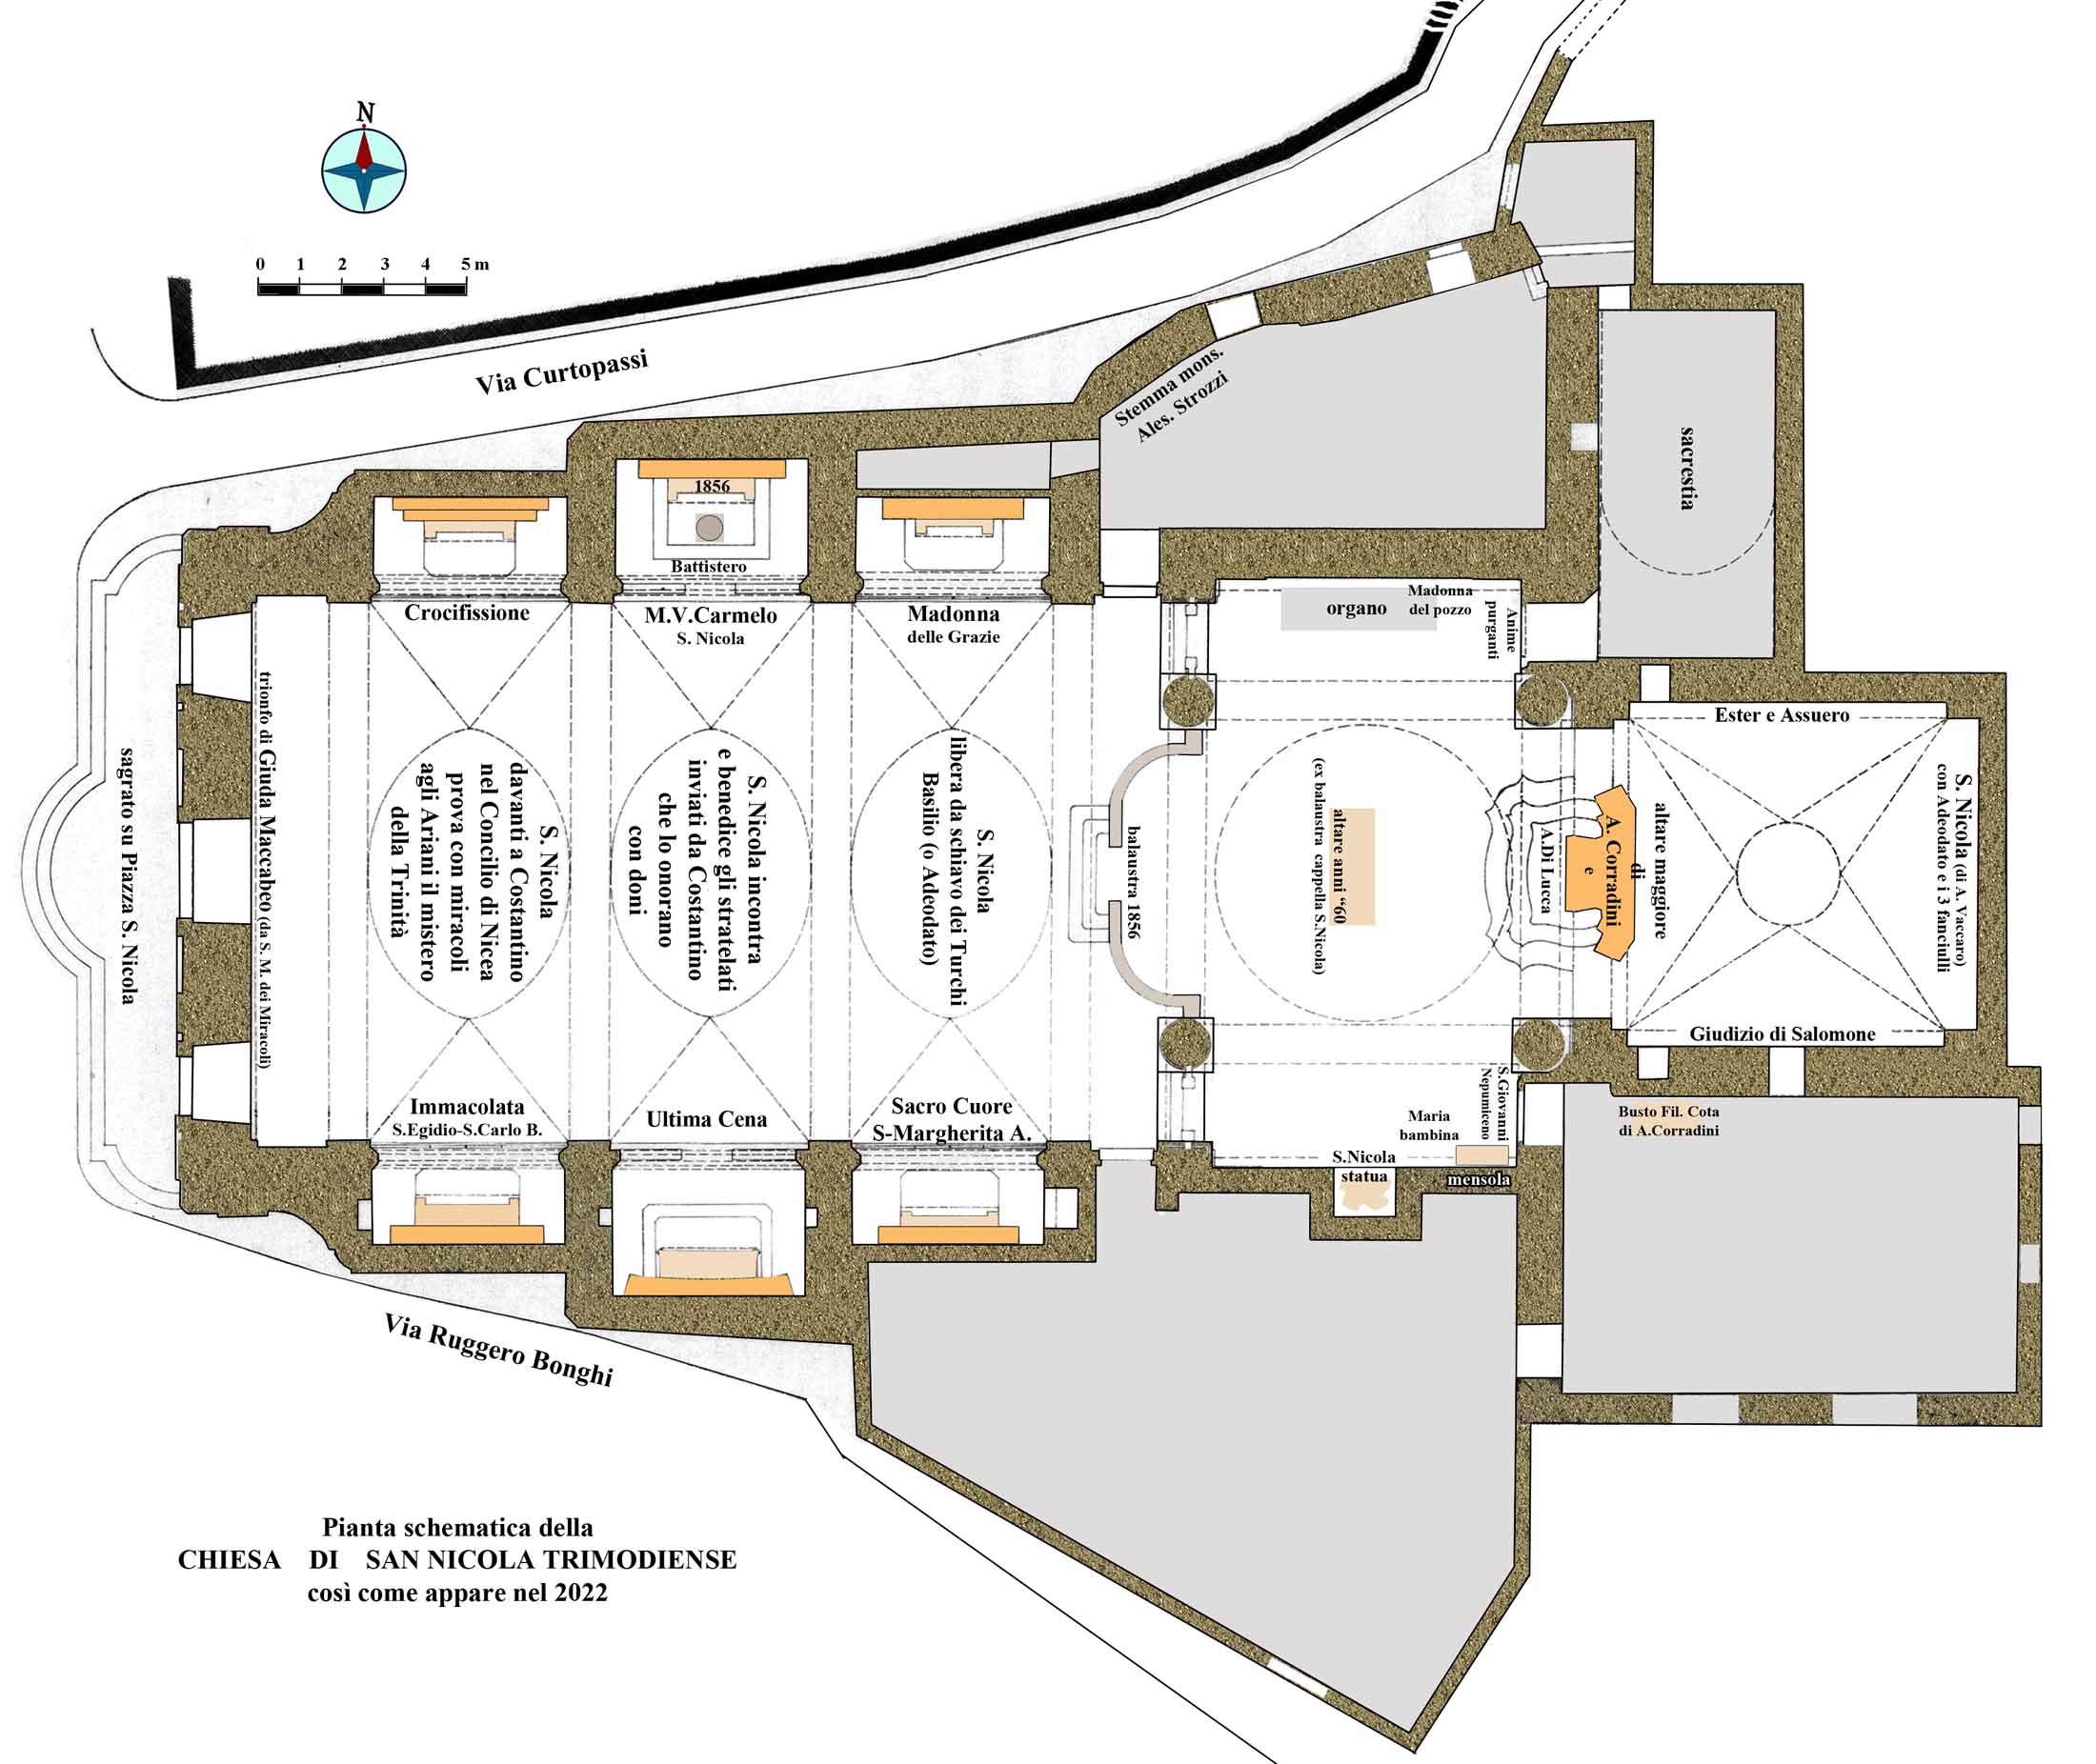 attual (2022) pianta schematica della Chiesa